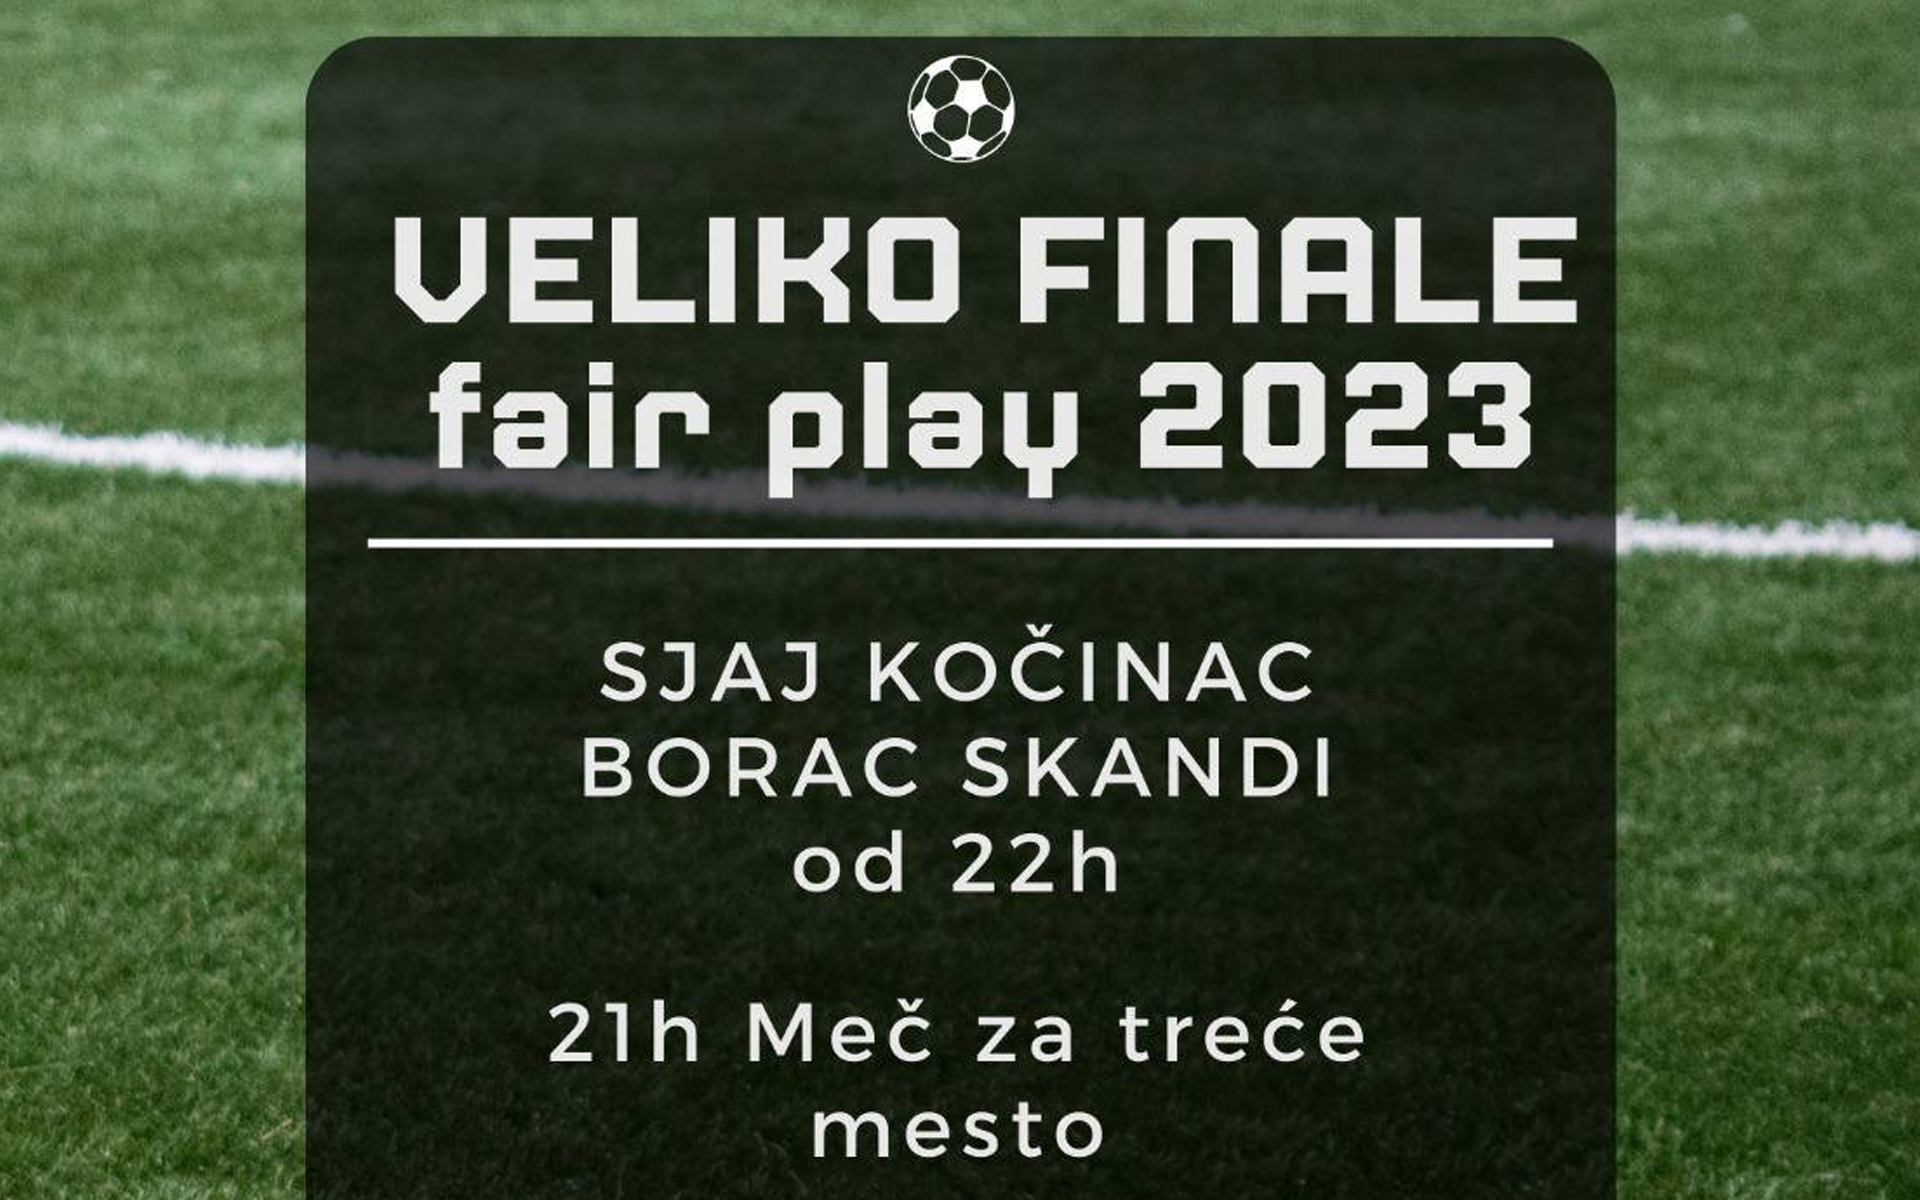 Večeras završnica turnira “Fair play” u Bošnjanu